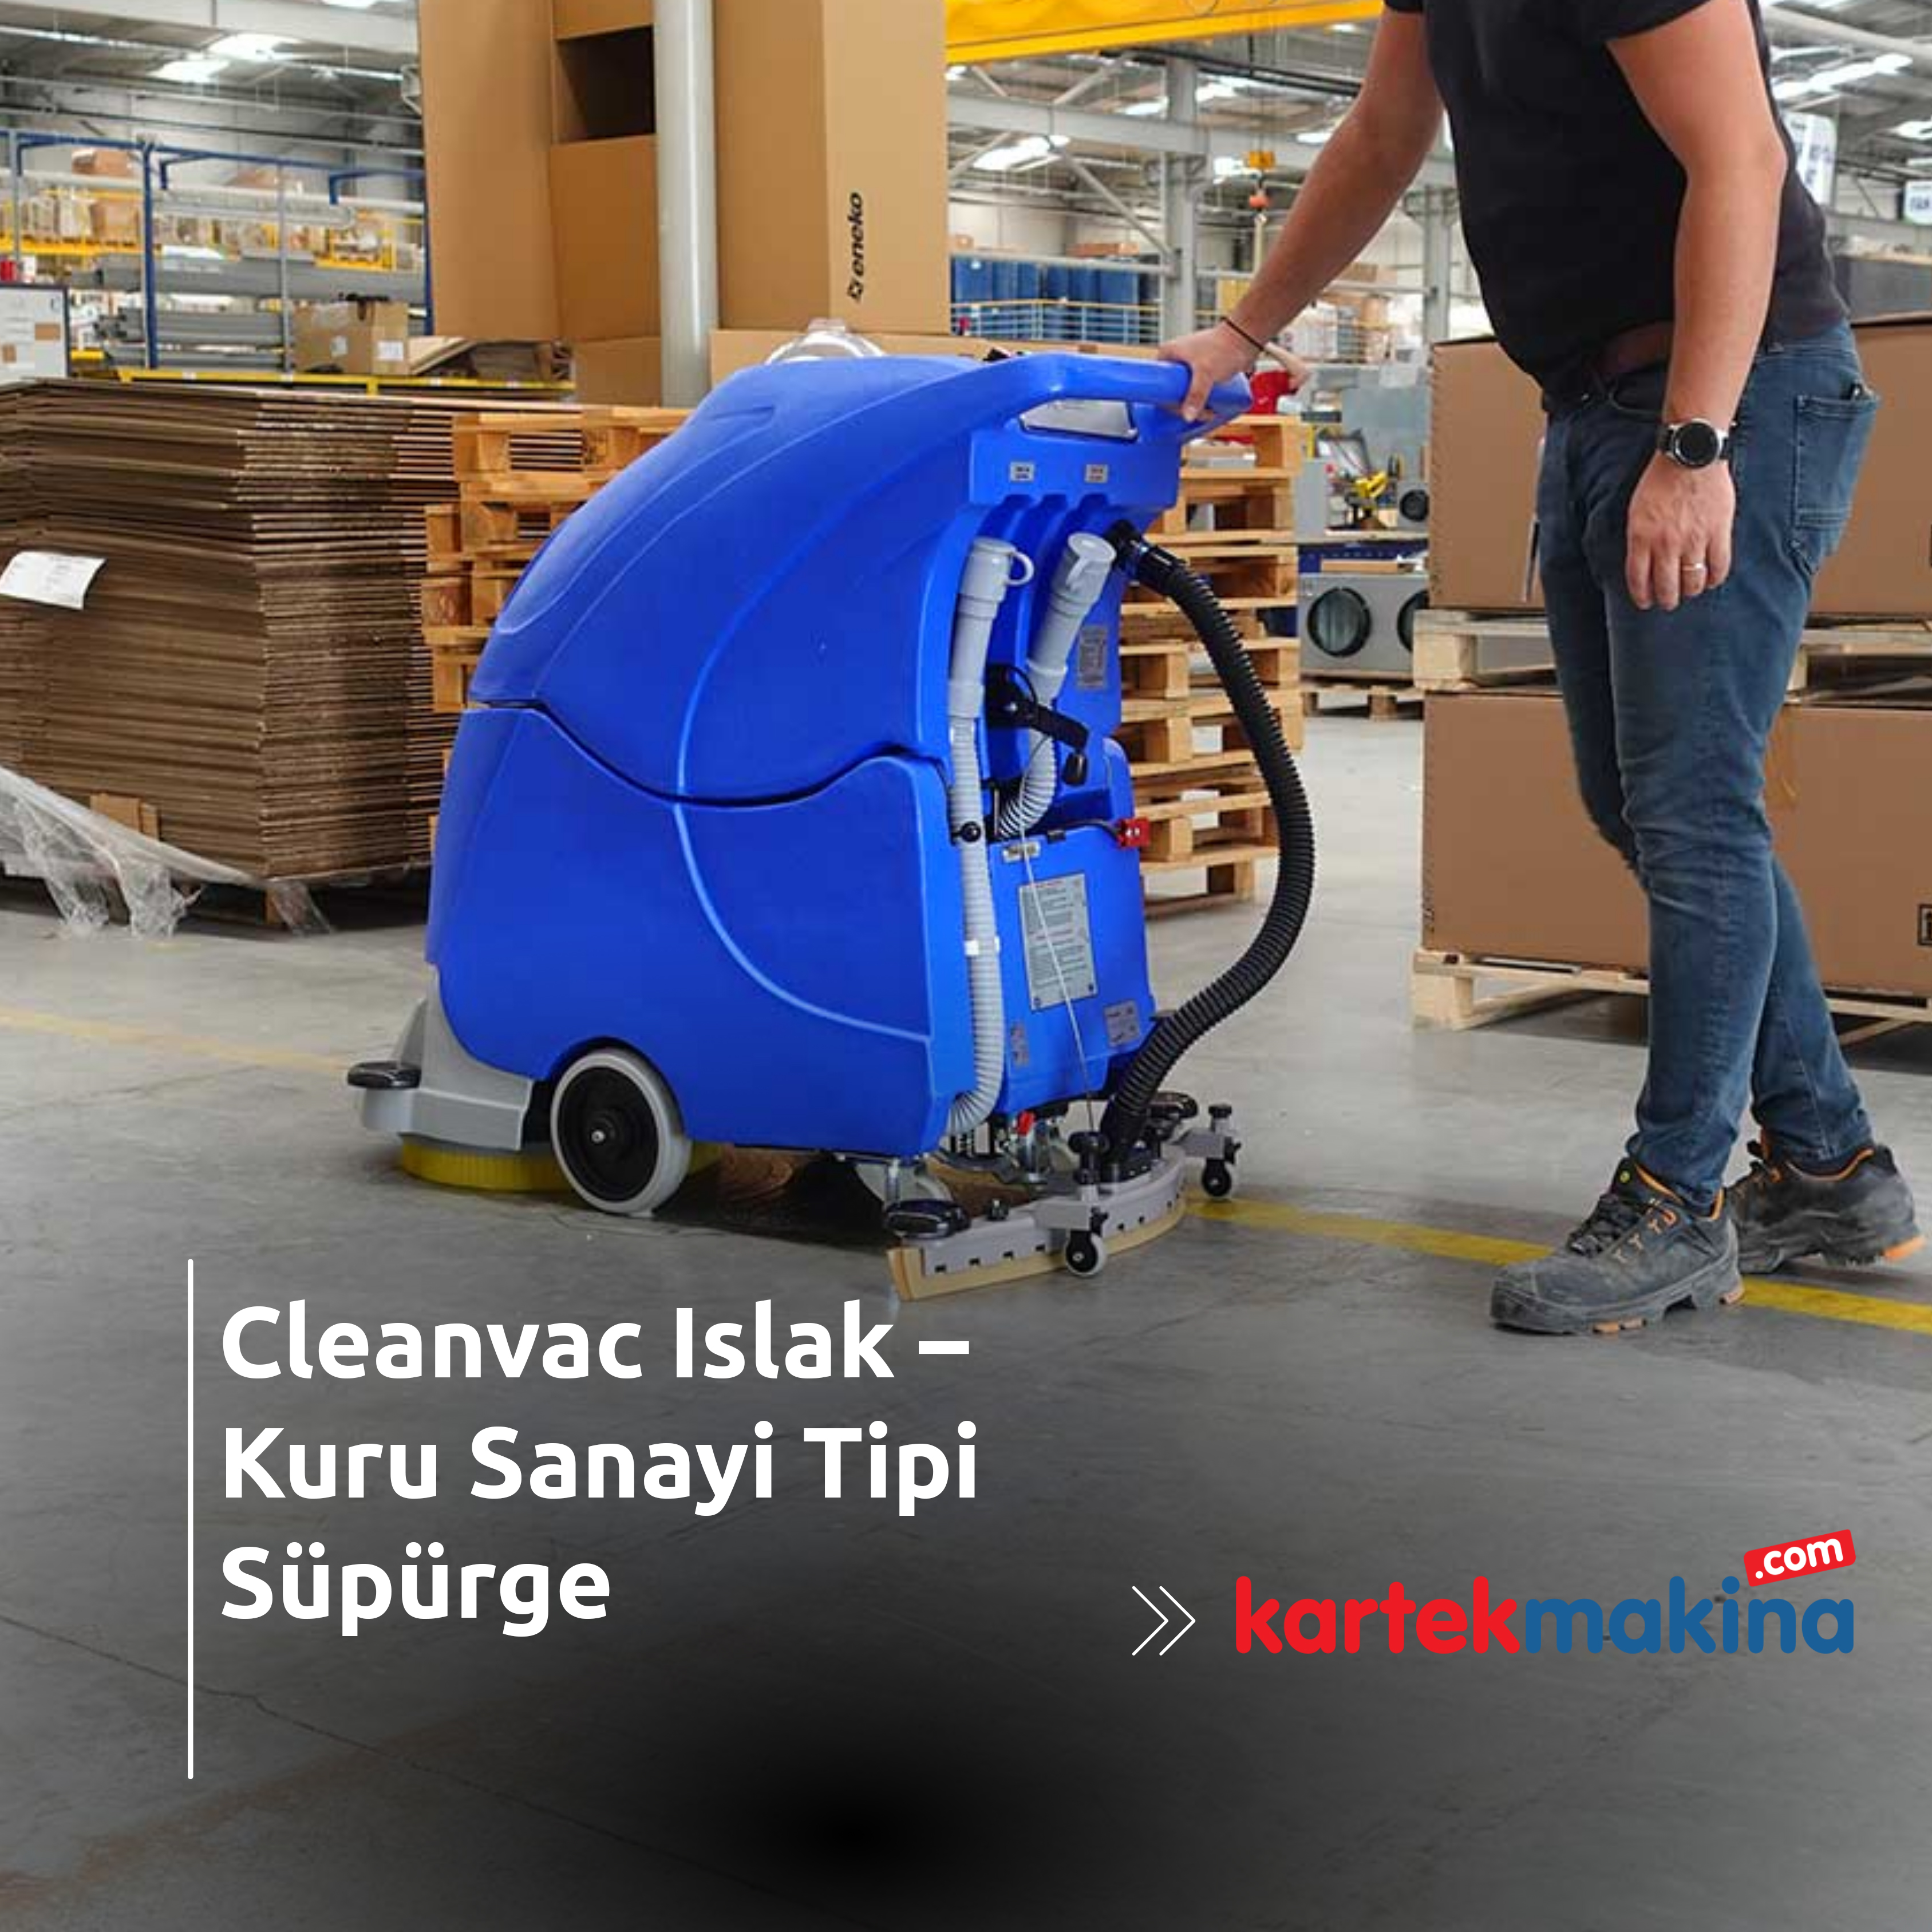 Cleanvac Islak – Kuru Sanayi Tipi Süpürge - Cleanvac Islak – Kuru Sanayi Tipi Süpürge